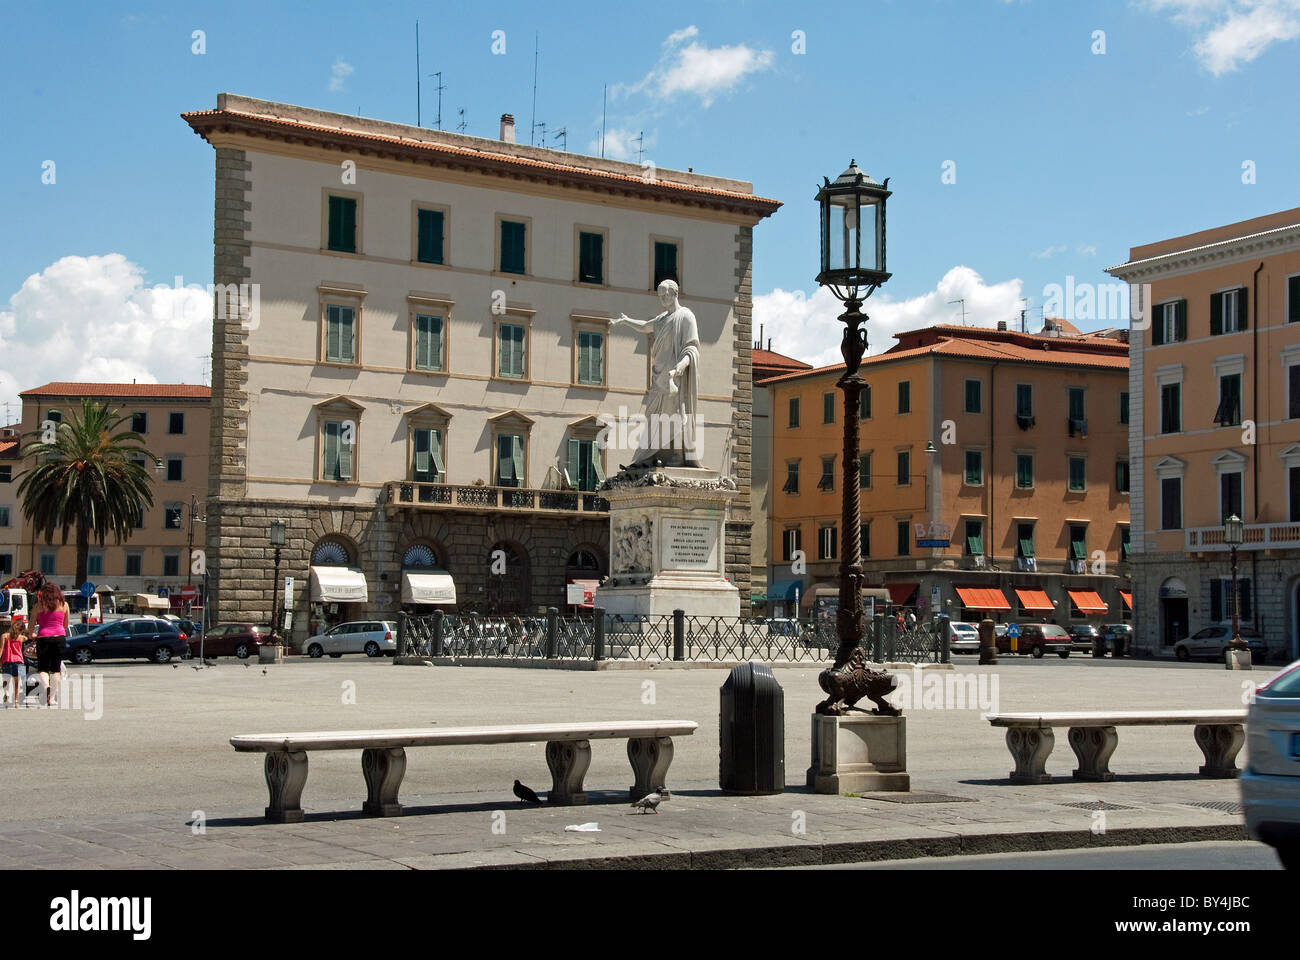 Livorno (Leghorn) Tuscany, Piazza della Repubblica with the statue of Leopoldo II Stock Photo